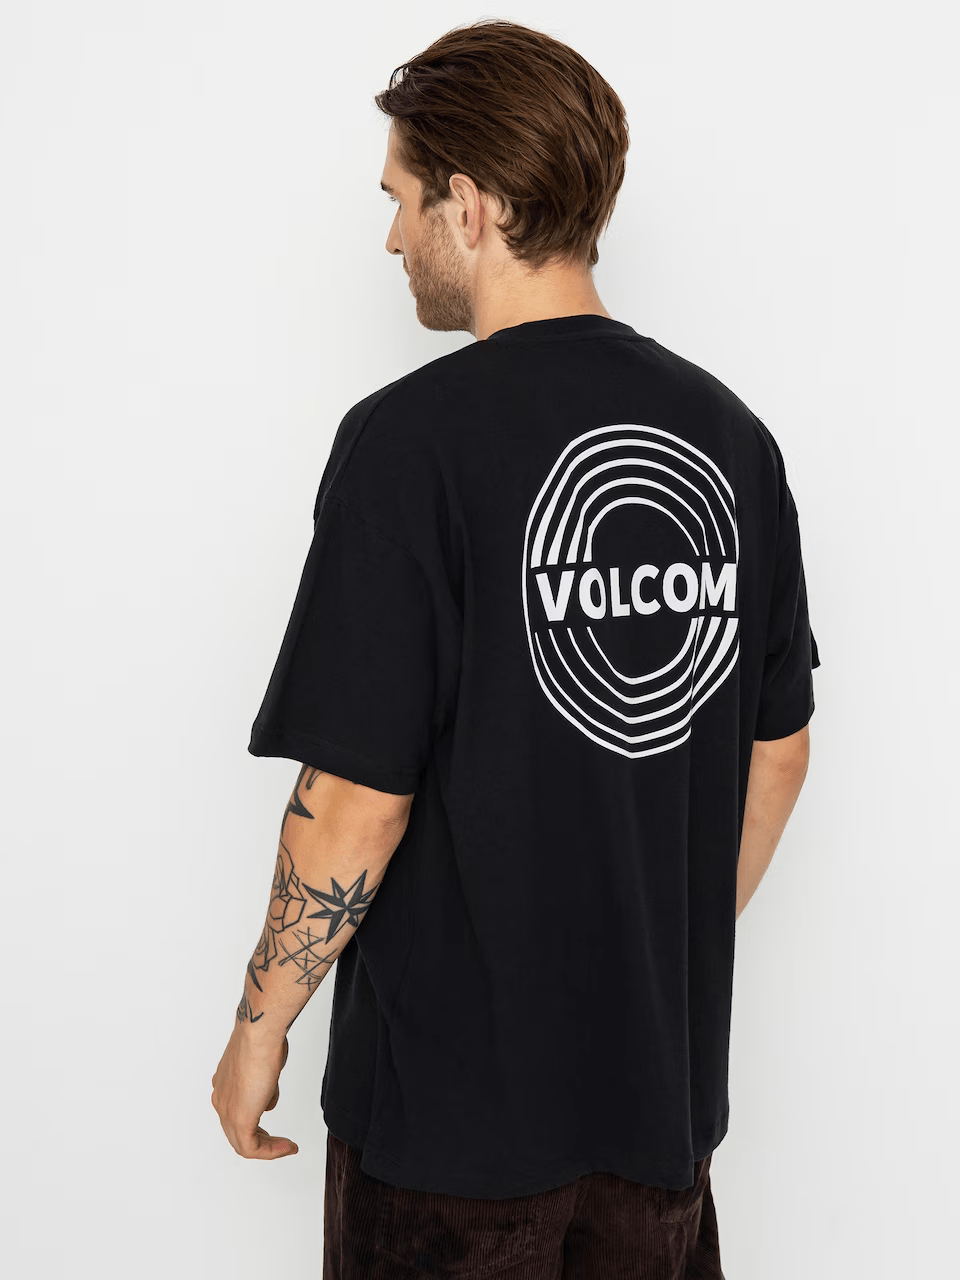 Volcom SwitchFlip Lse Short Sleeve T-Shirt (Black) VOLCOM